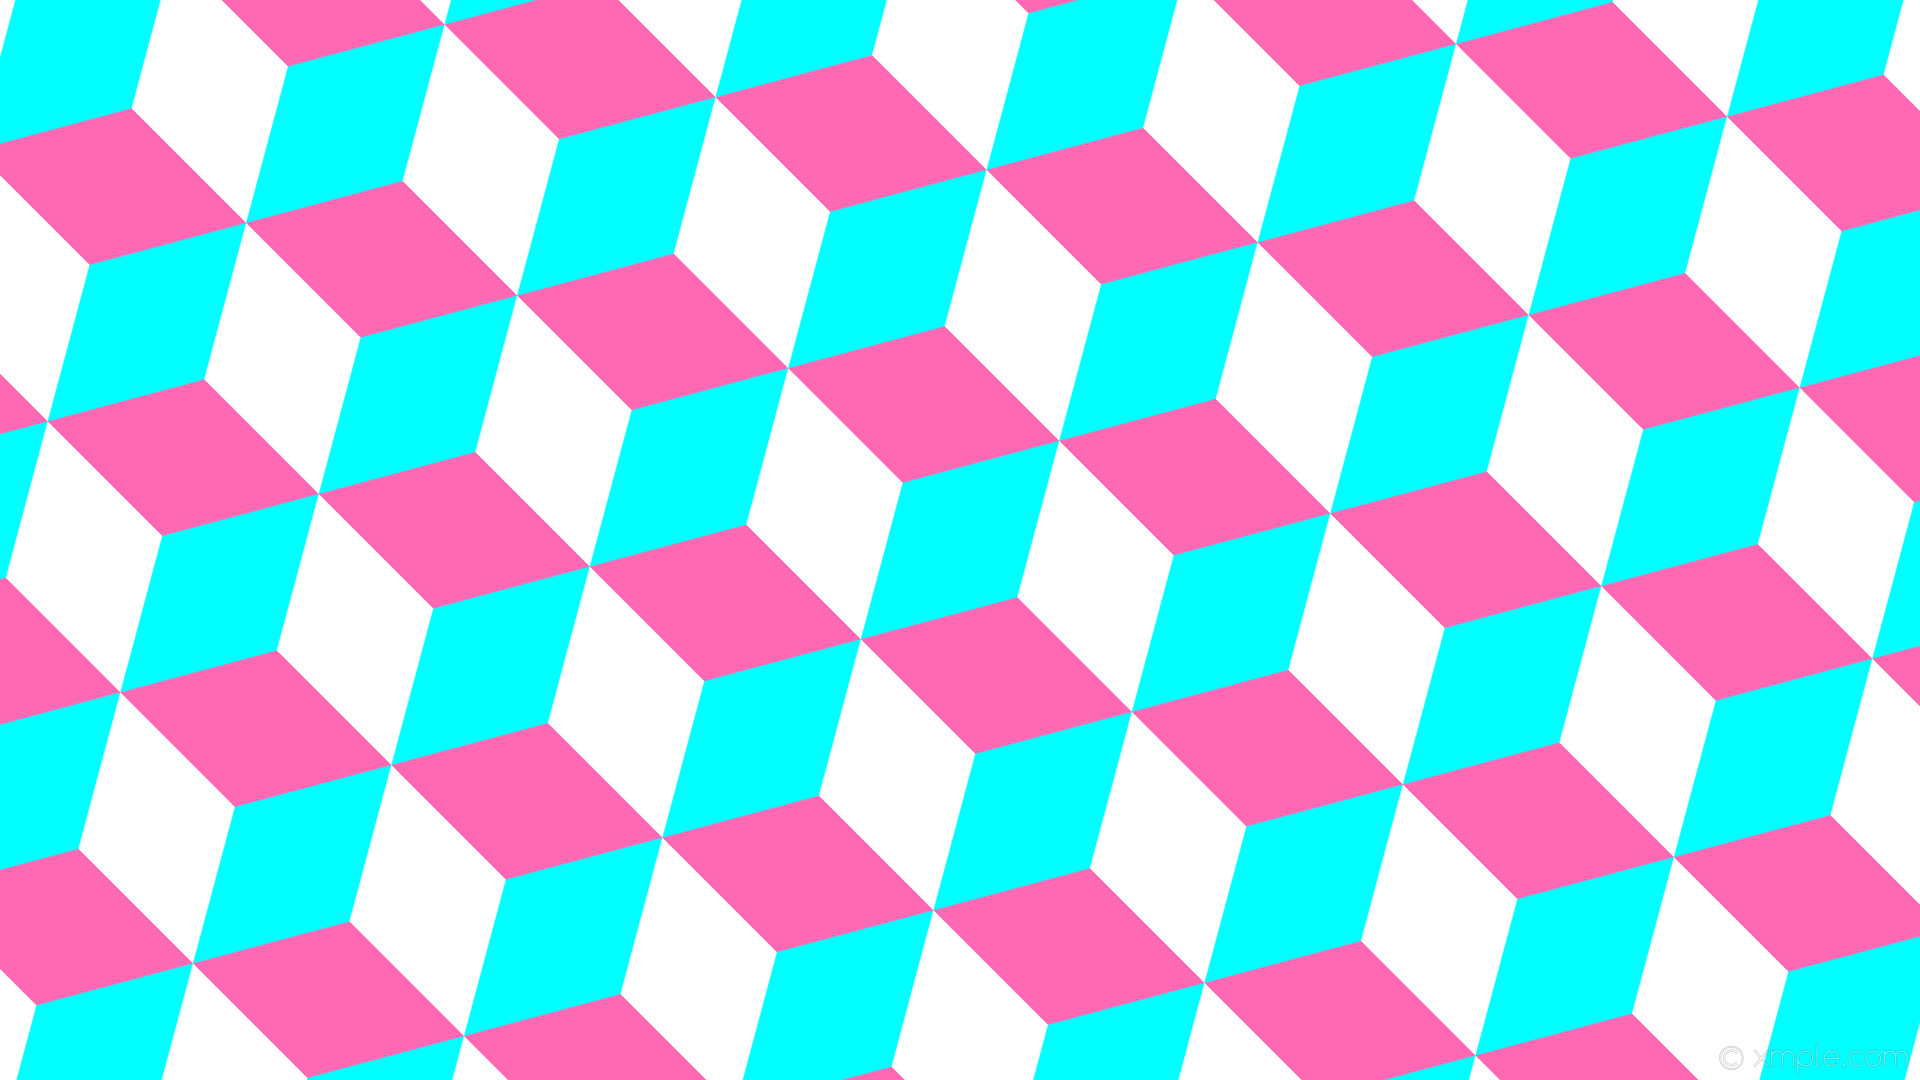 1920x1080 wallpaper blue 3d cubes pink white aqua cyan hot pink #00ffff #ff69b4  #ffffff